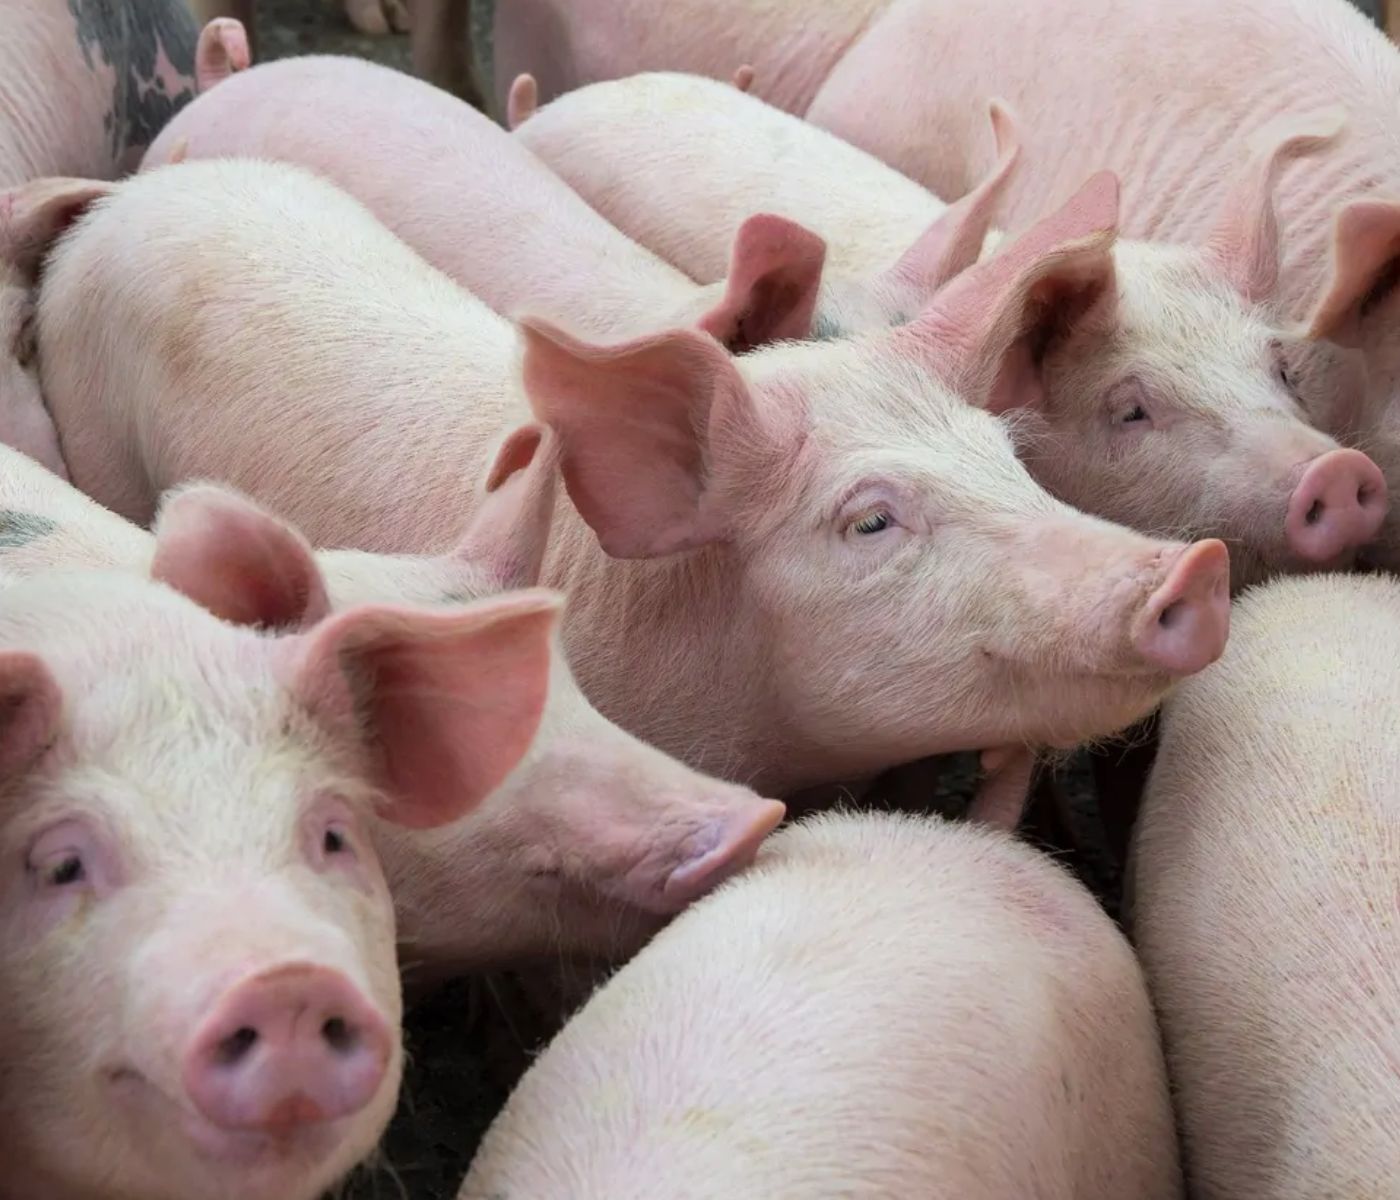 Las exportaciones de porcino de capa blanca en España baten récords